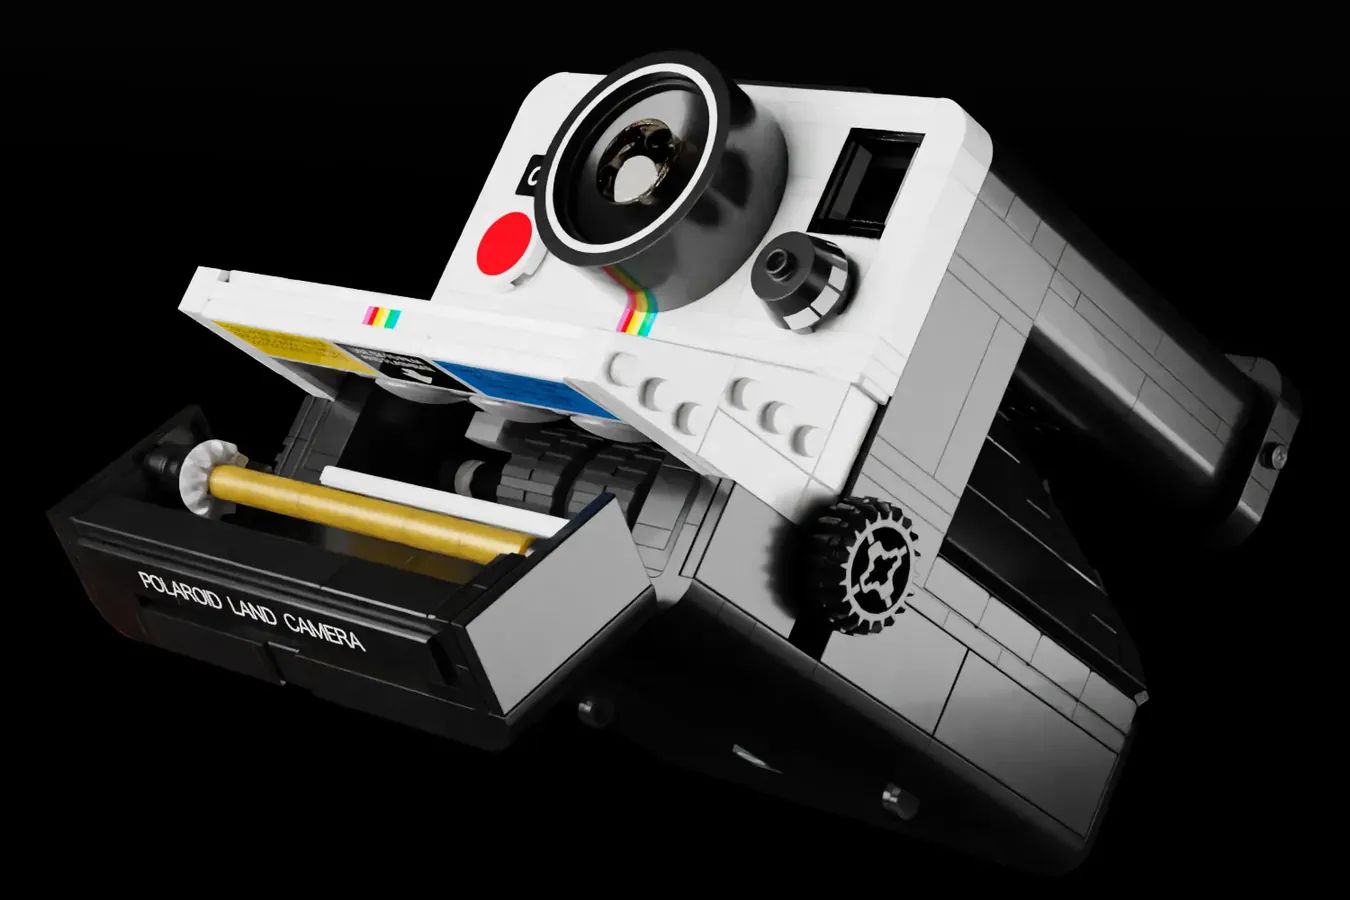 Polaroid OneStep SX-70 : un modèle Lego disponible !